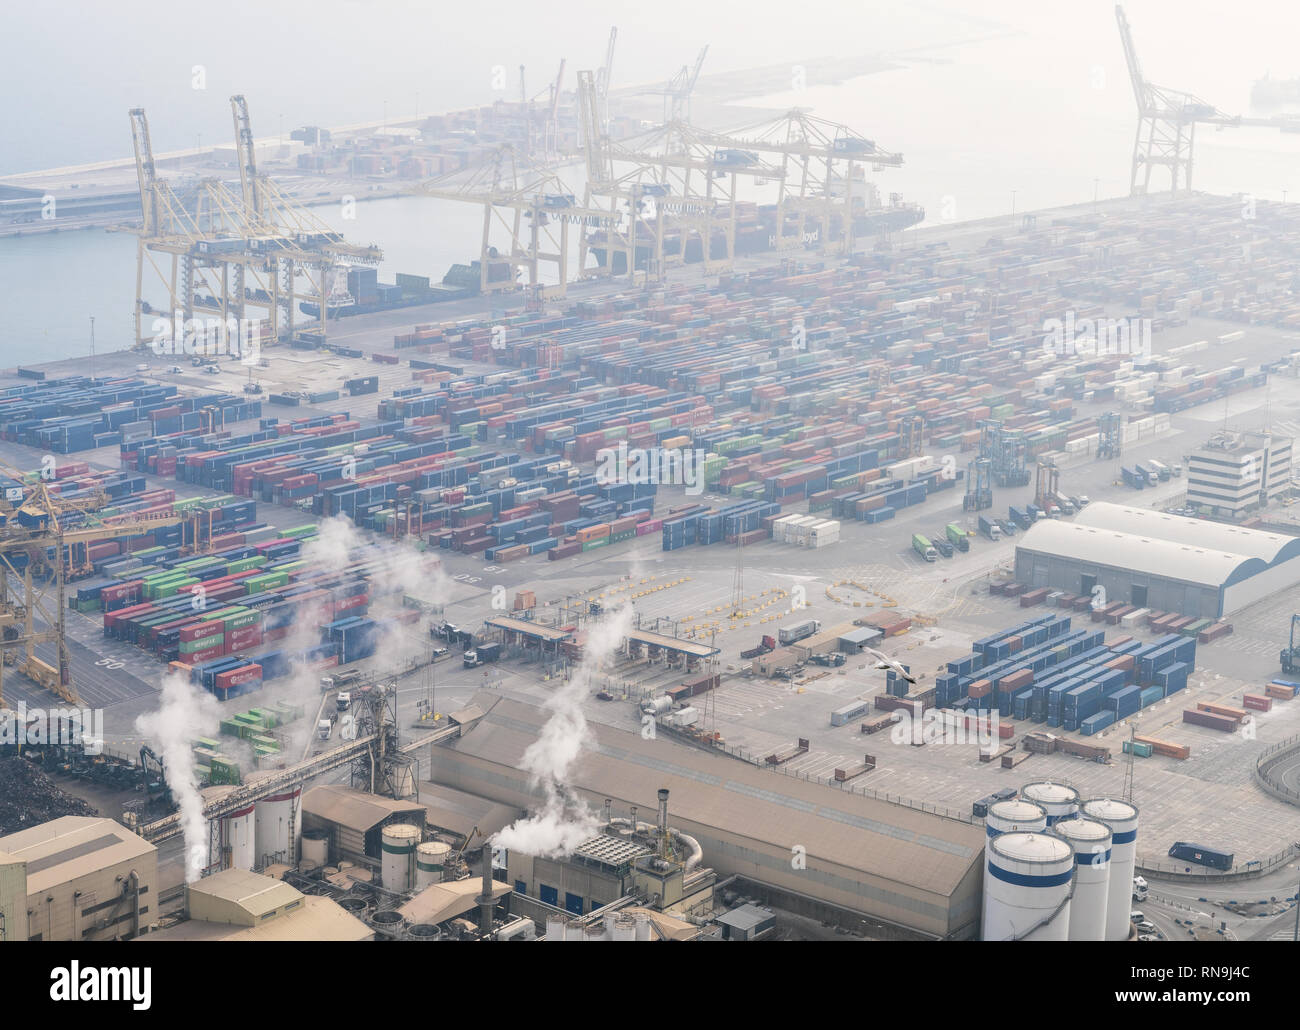 7 febbraio 2019 - Barcellona, Spagna. Immagine di un occupato commerciali/porto industriale. Cattiva visibilità causata dall'inquinamento atmosferico. Foto Stock